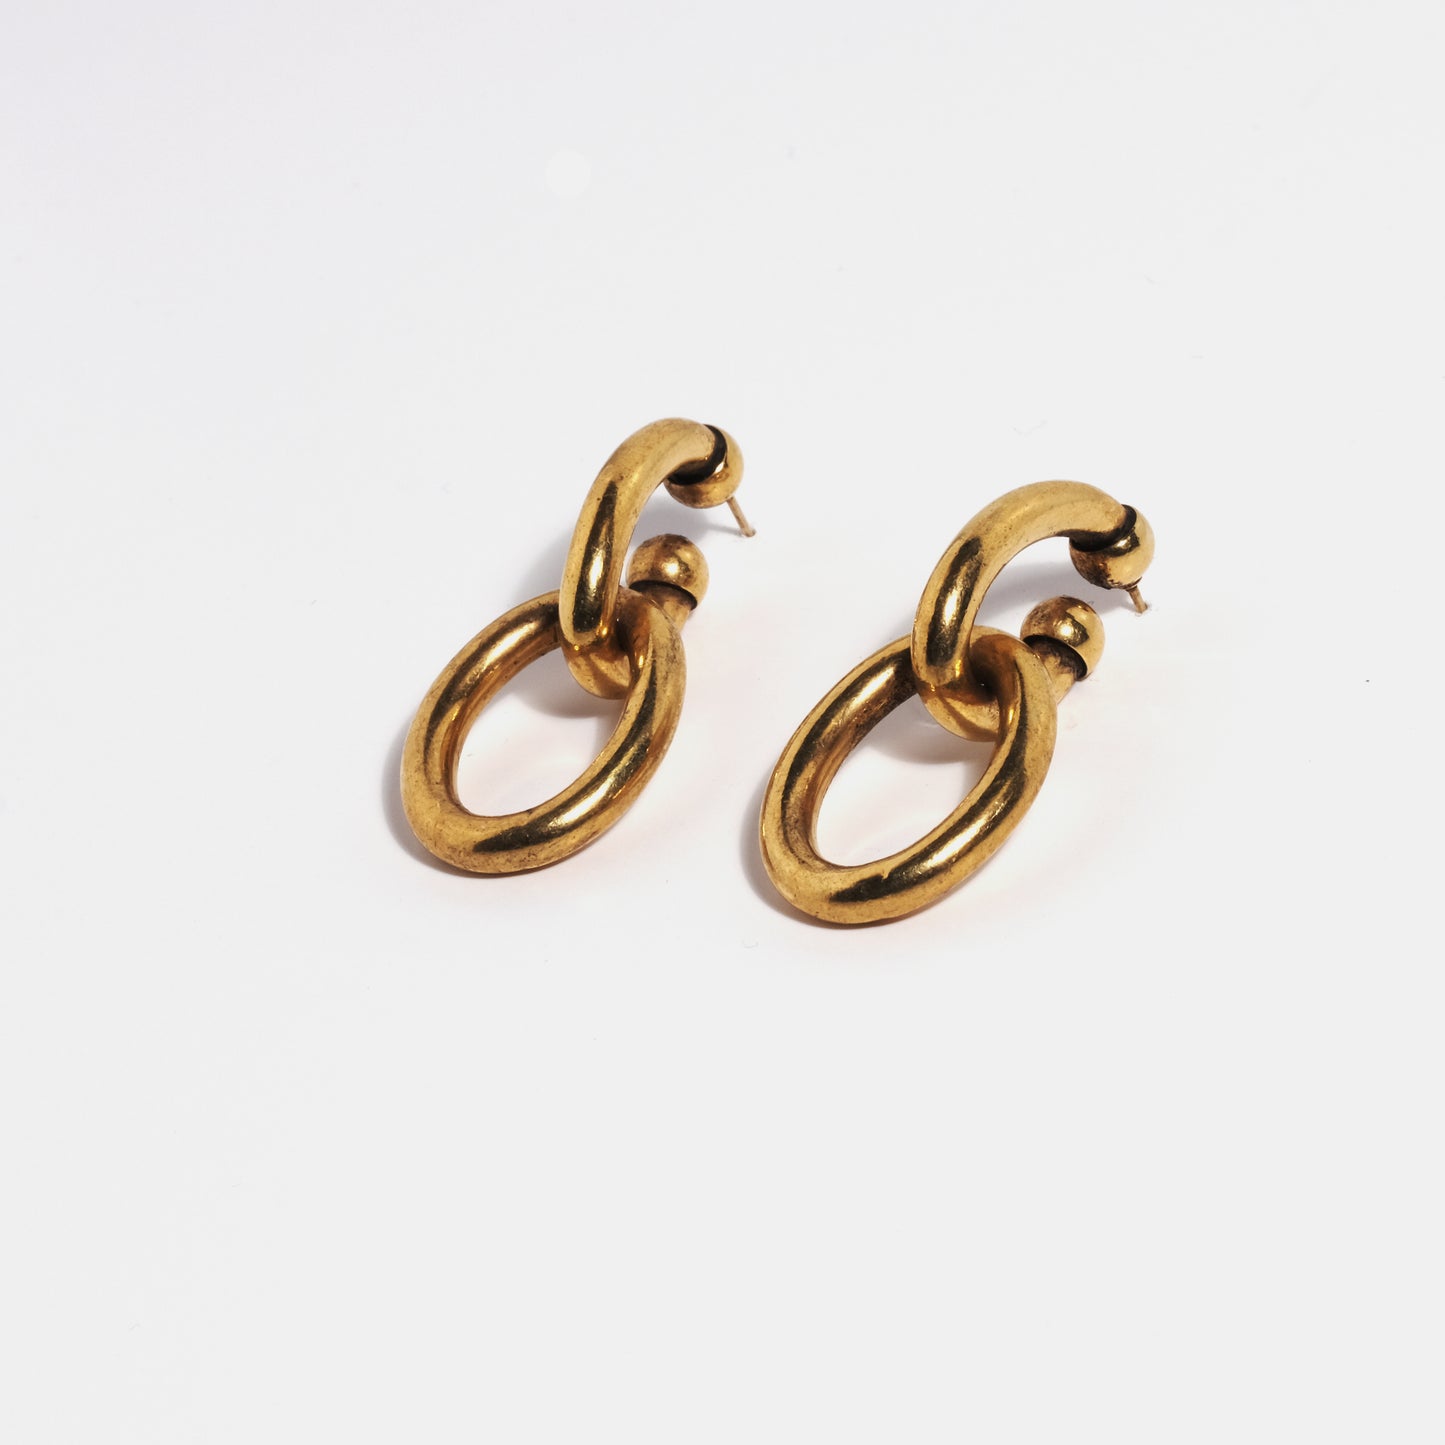 "Soho" earrings